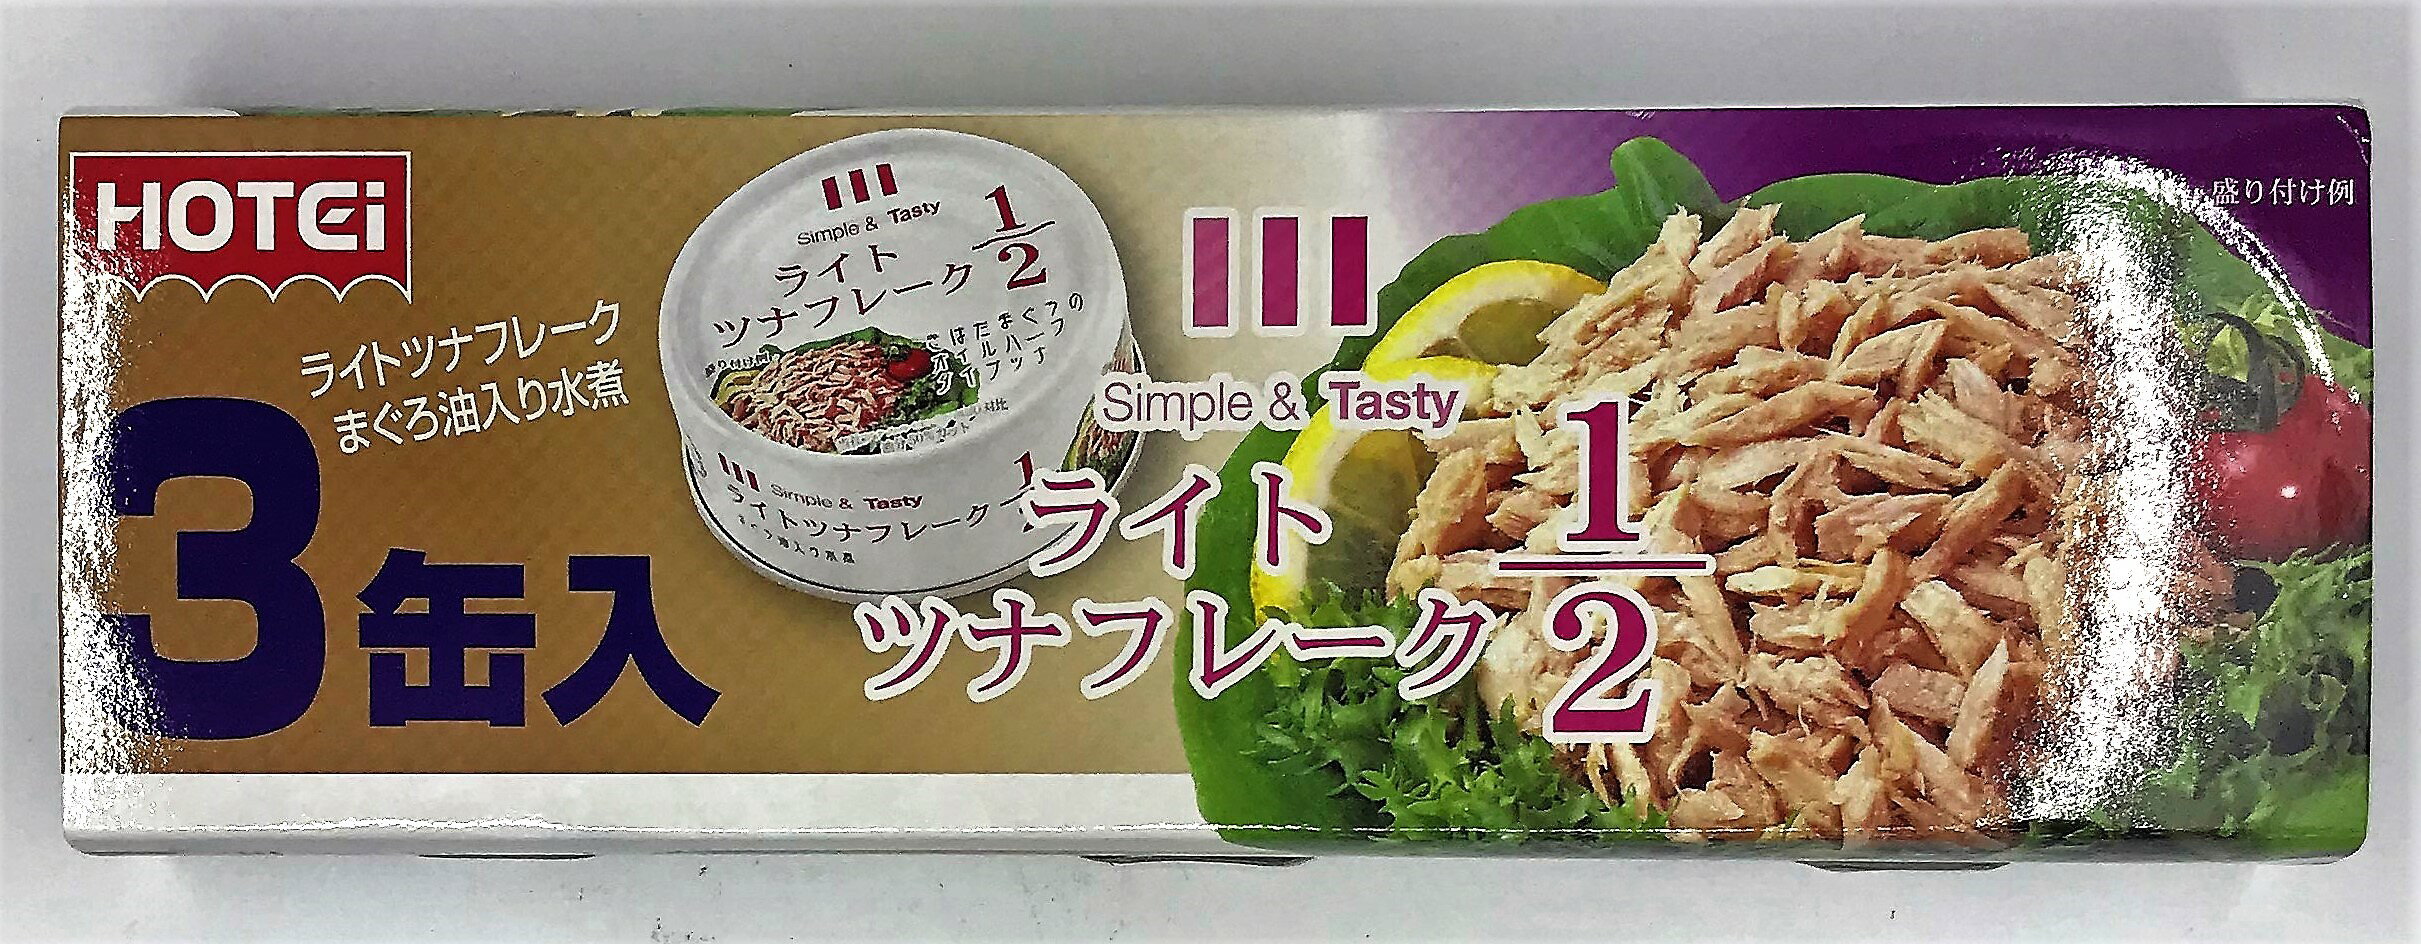 [哈日小丸子]HOTEI鮪魚罐1/2油脂(3罐入/210g)